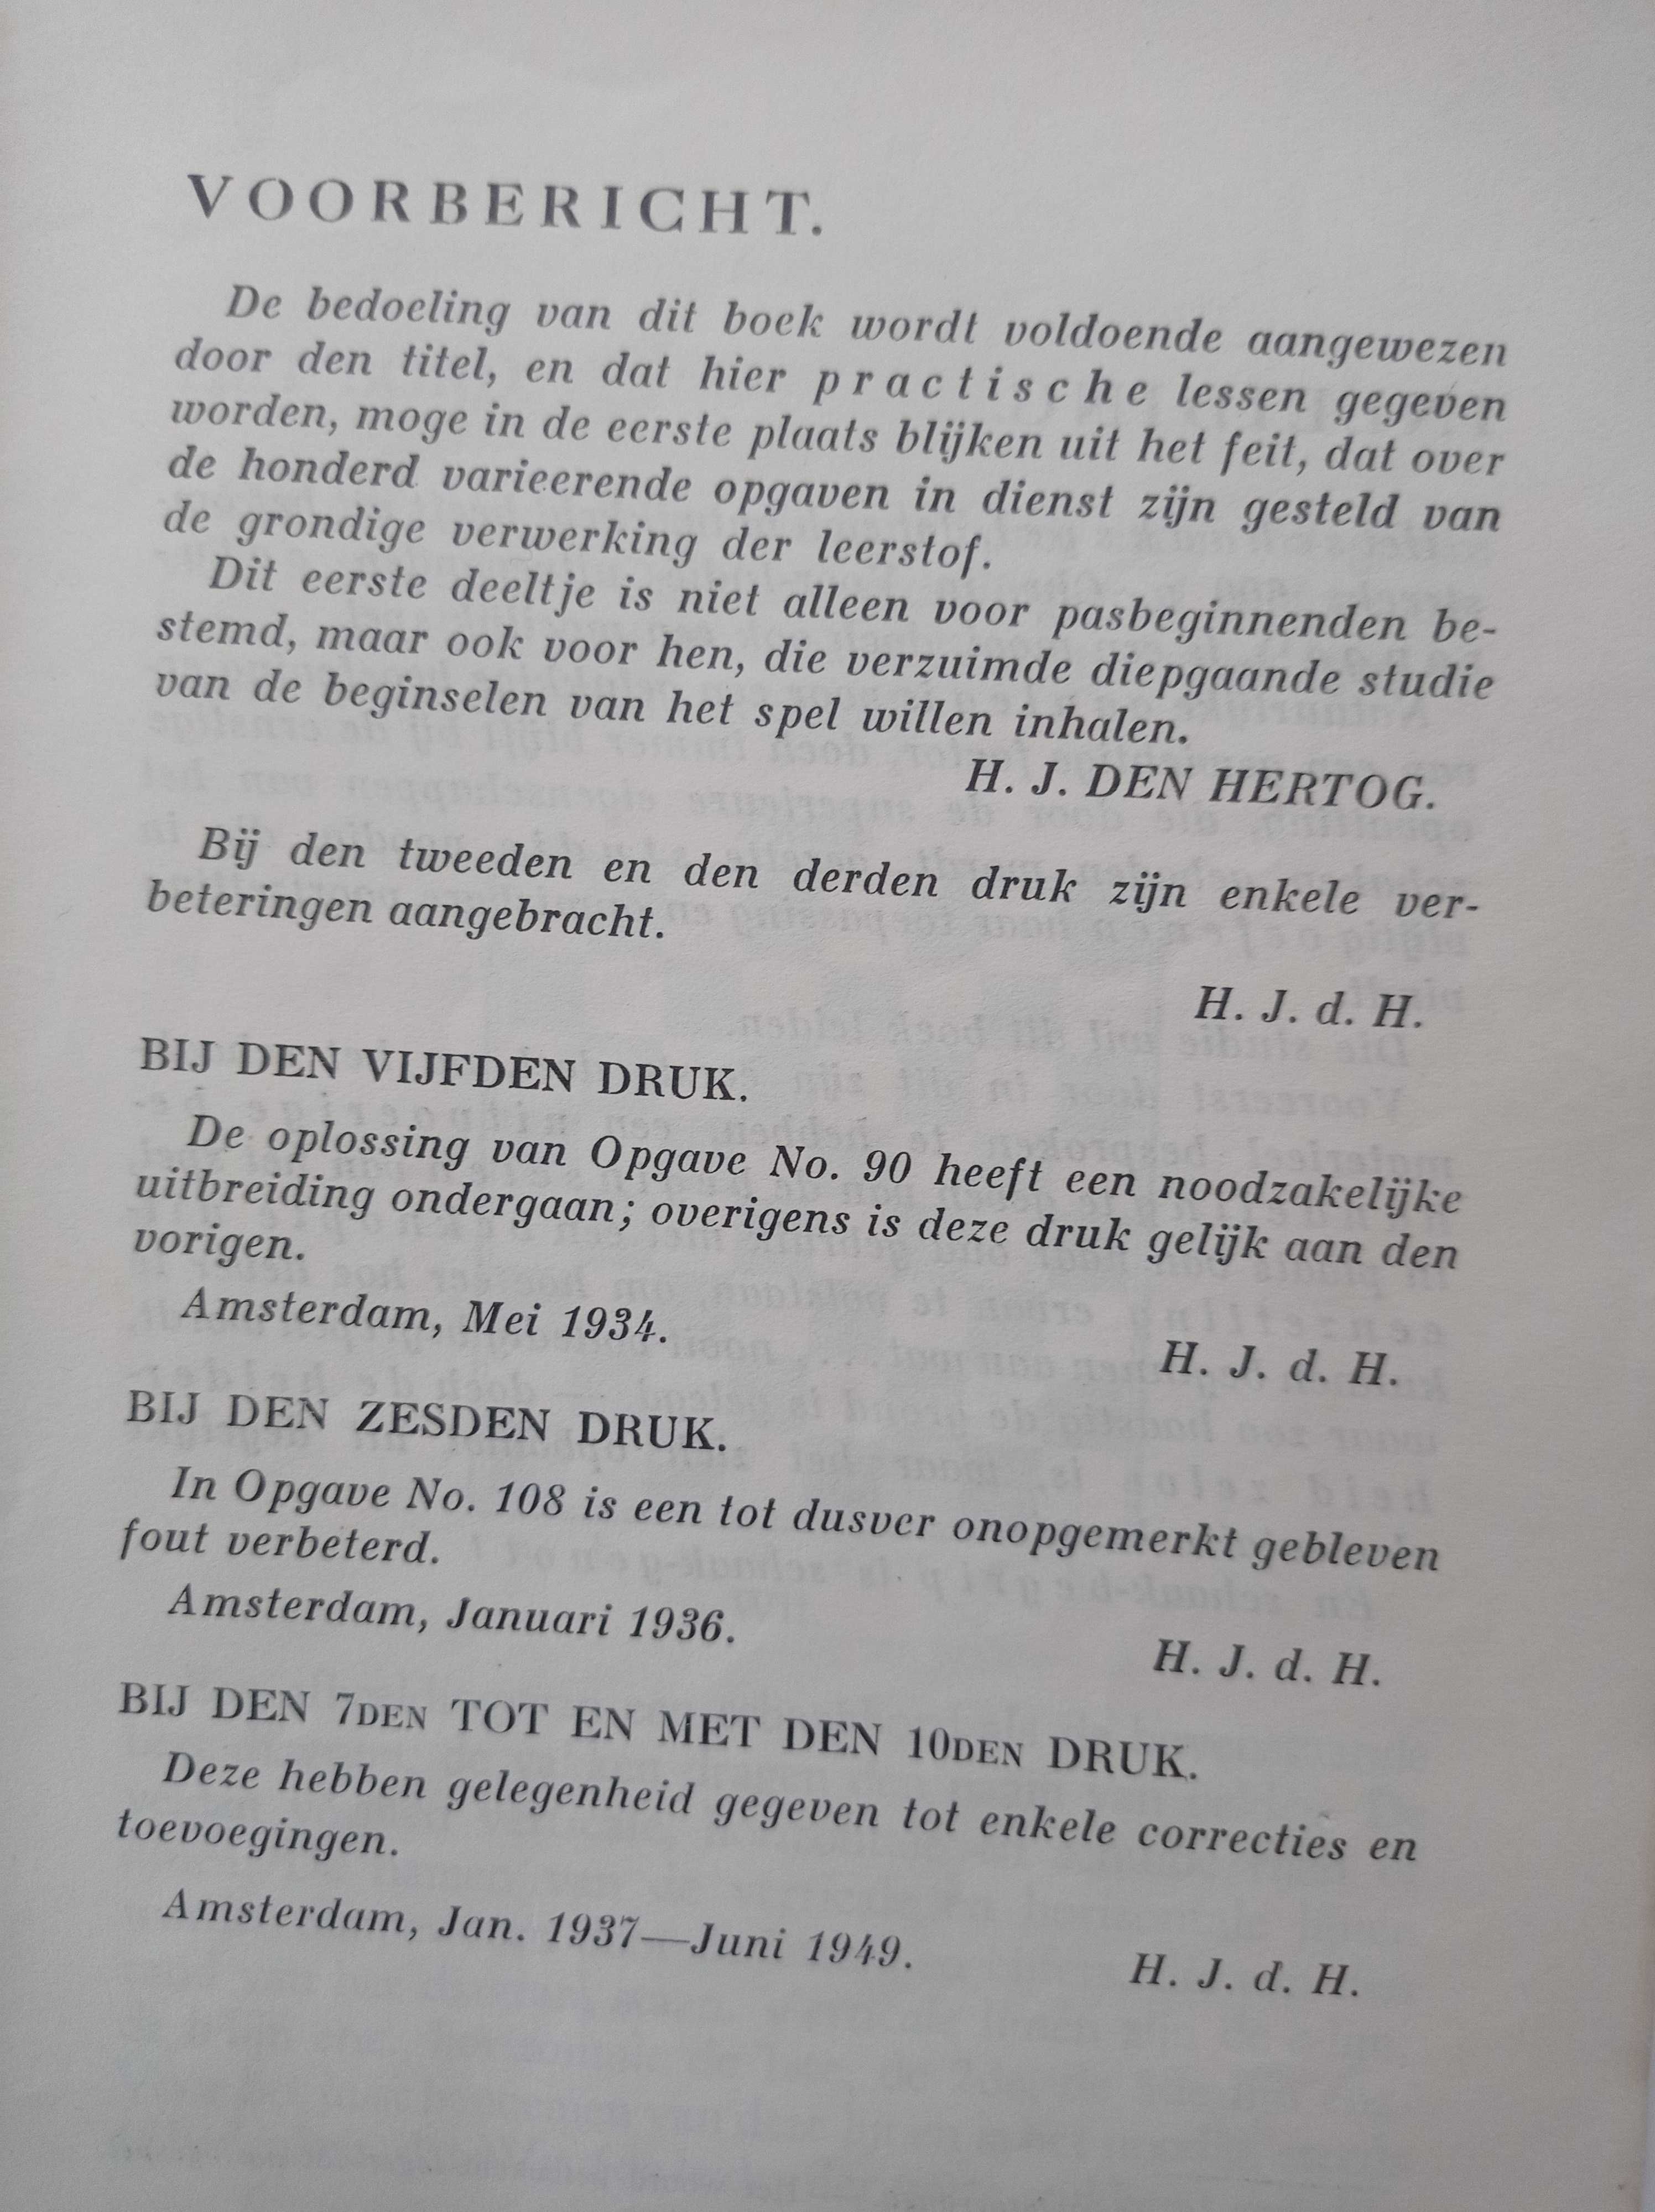 Szachy - Practische Schaaklessen - Den Hertog -1949 rok.